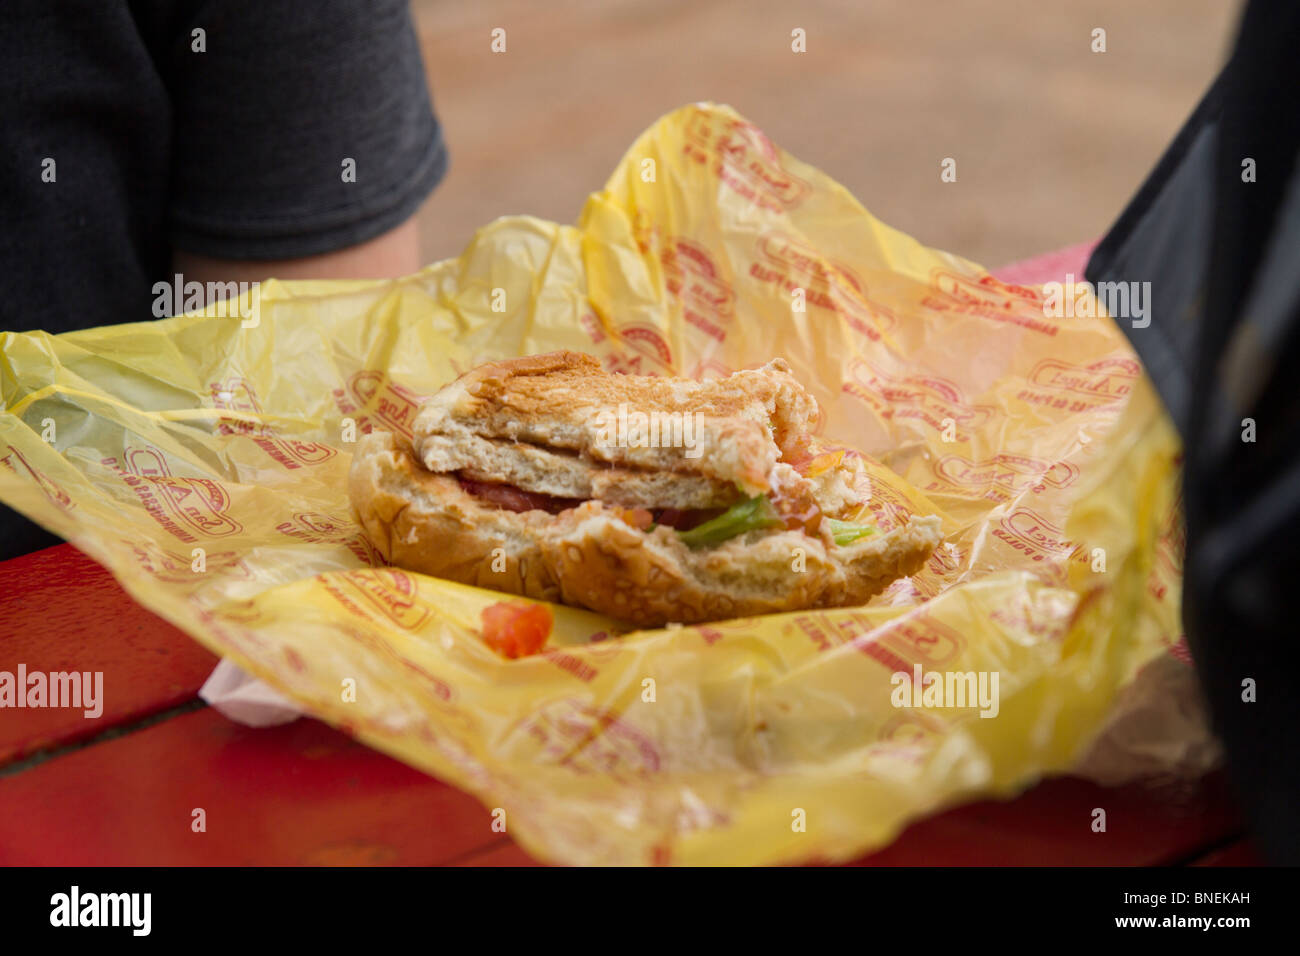 Partially eaten hamburger Stock Photo